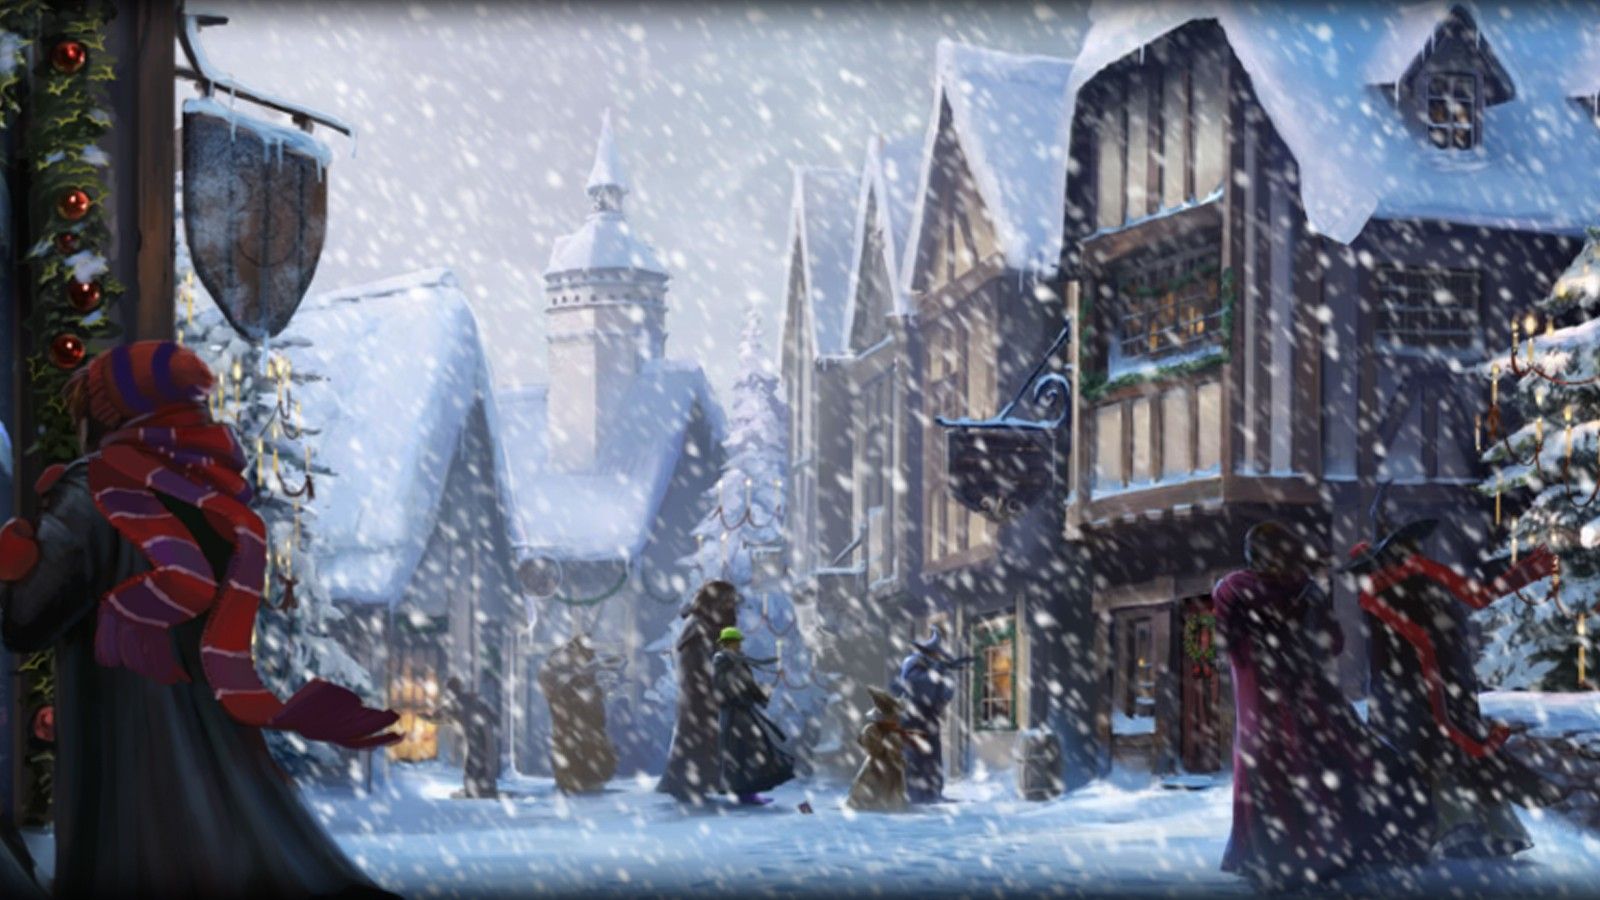 Mang không khí lễ hội đến cho điện thoại của bạn với hình nền Giáng sinh Harry Potter. Cùng nhìn thấy những giấc mơ và niềm vui đón Giáng sinh nhé!